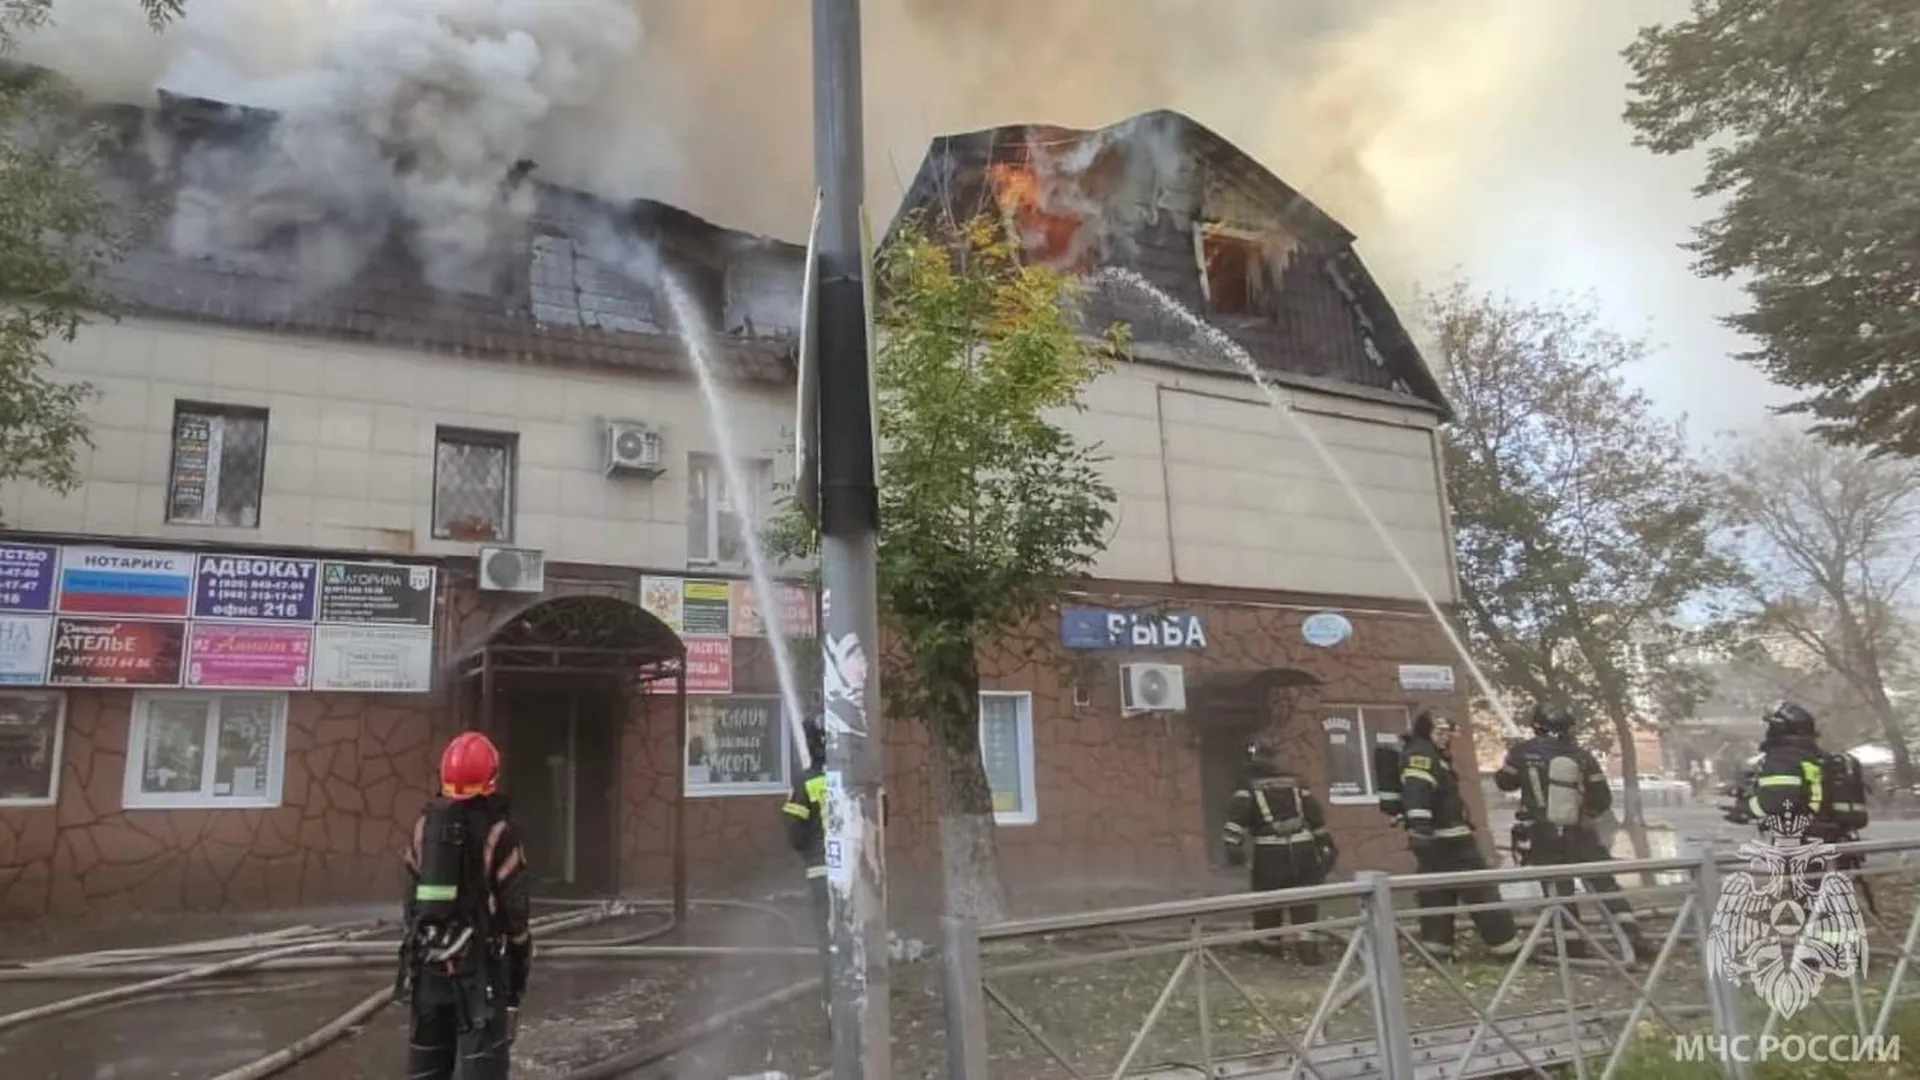 Площадь пожара в торгово-офисном здании в Щелково увеличилась до 1,2 тысячи «квадратов»